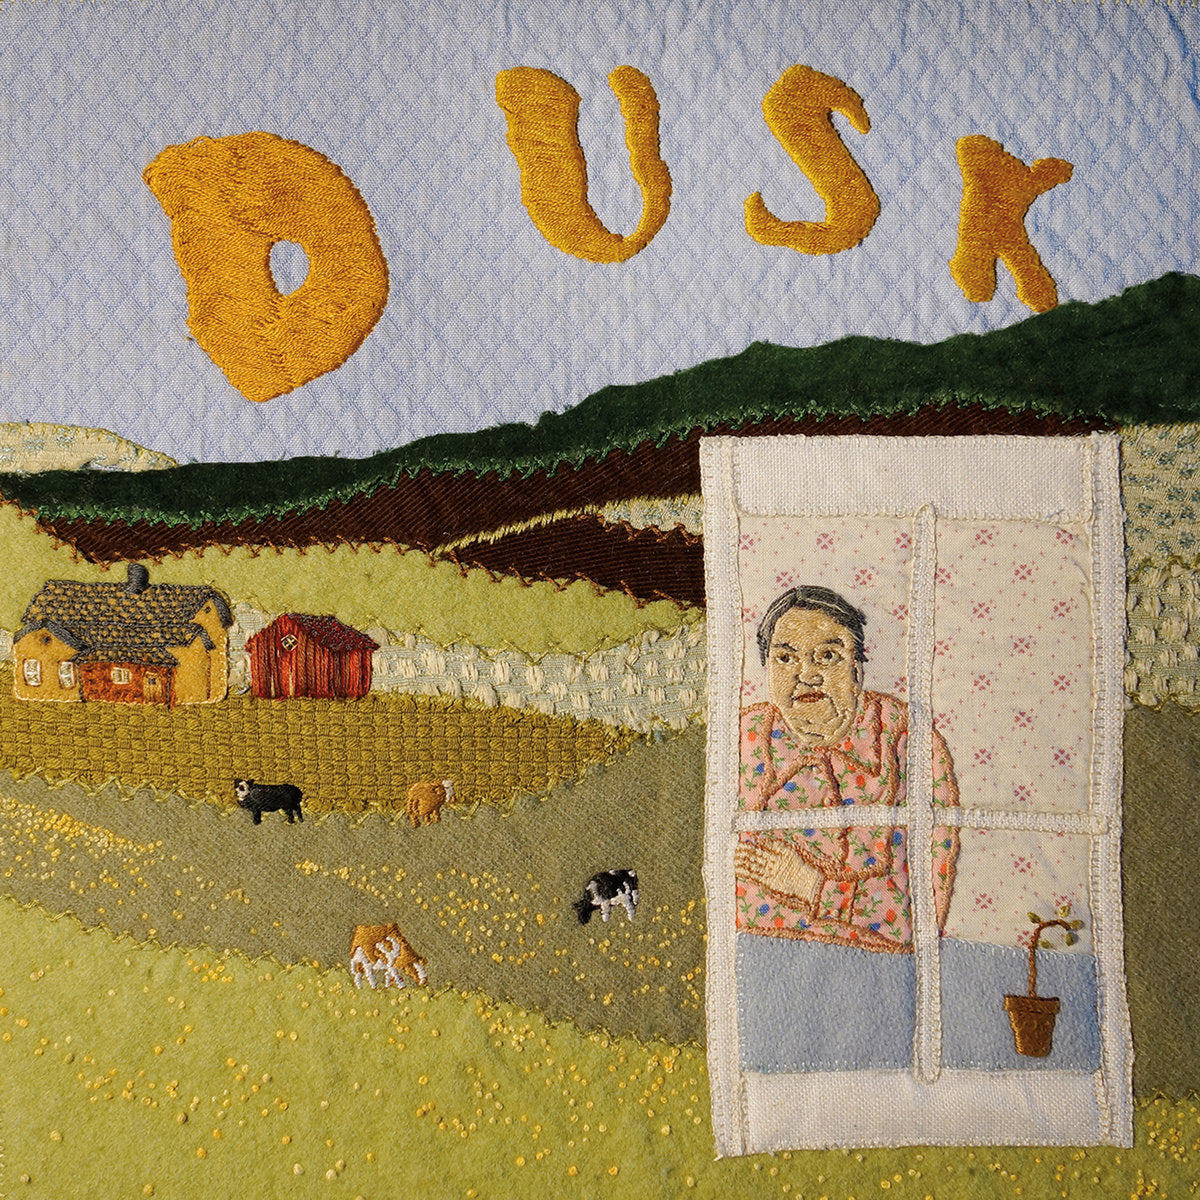 Dusk - Dusk LP (+7" Limited Edition)